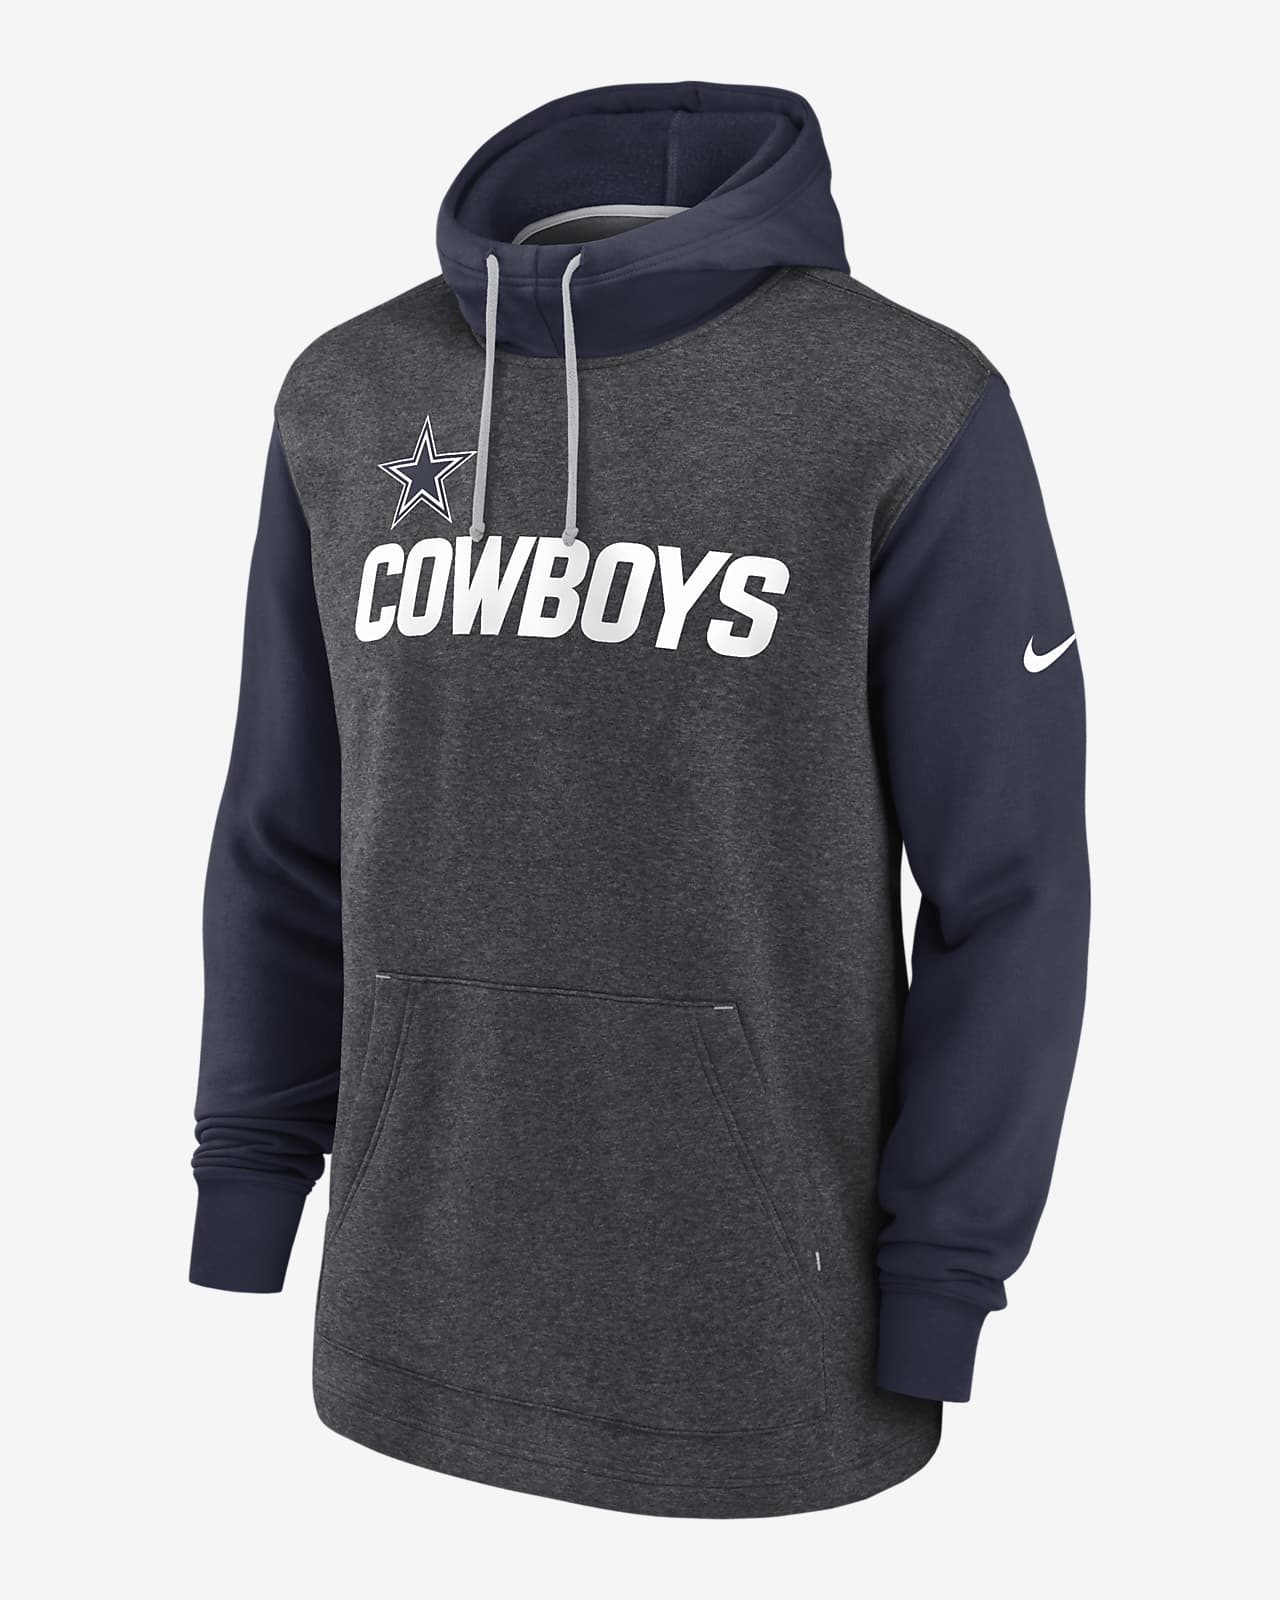 men's cowboys hoodies